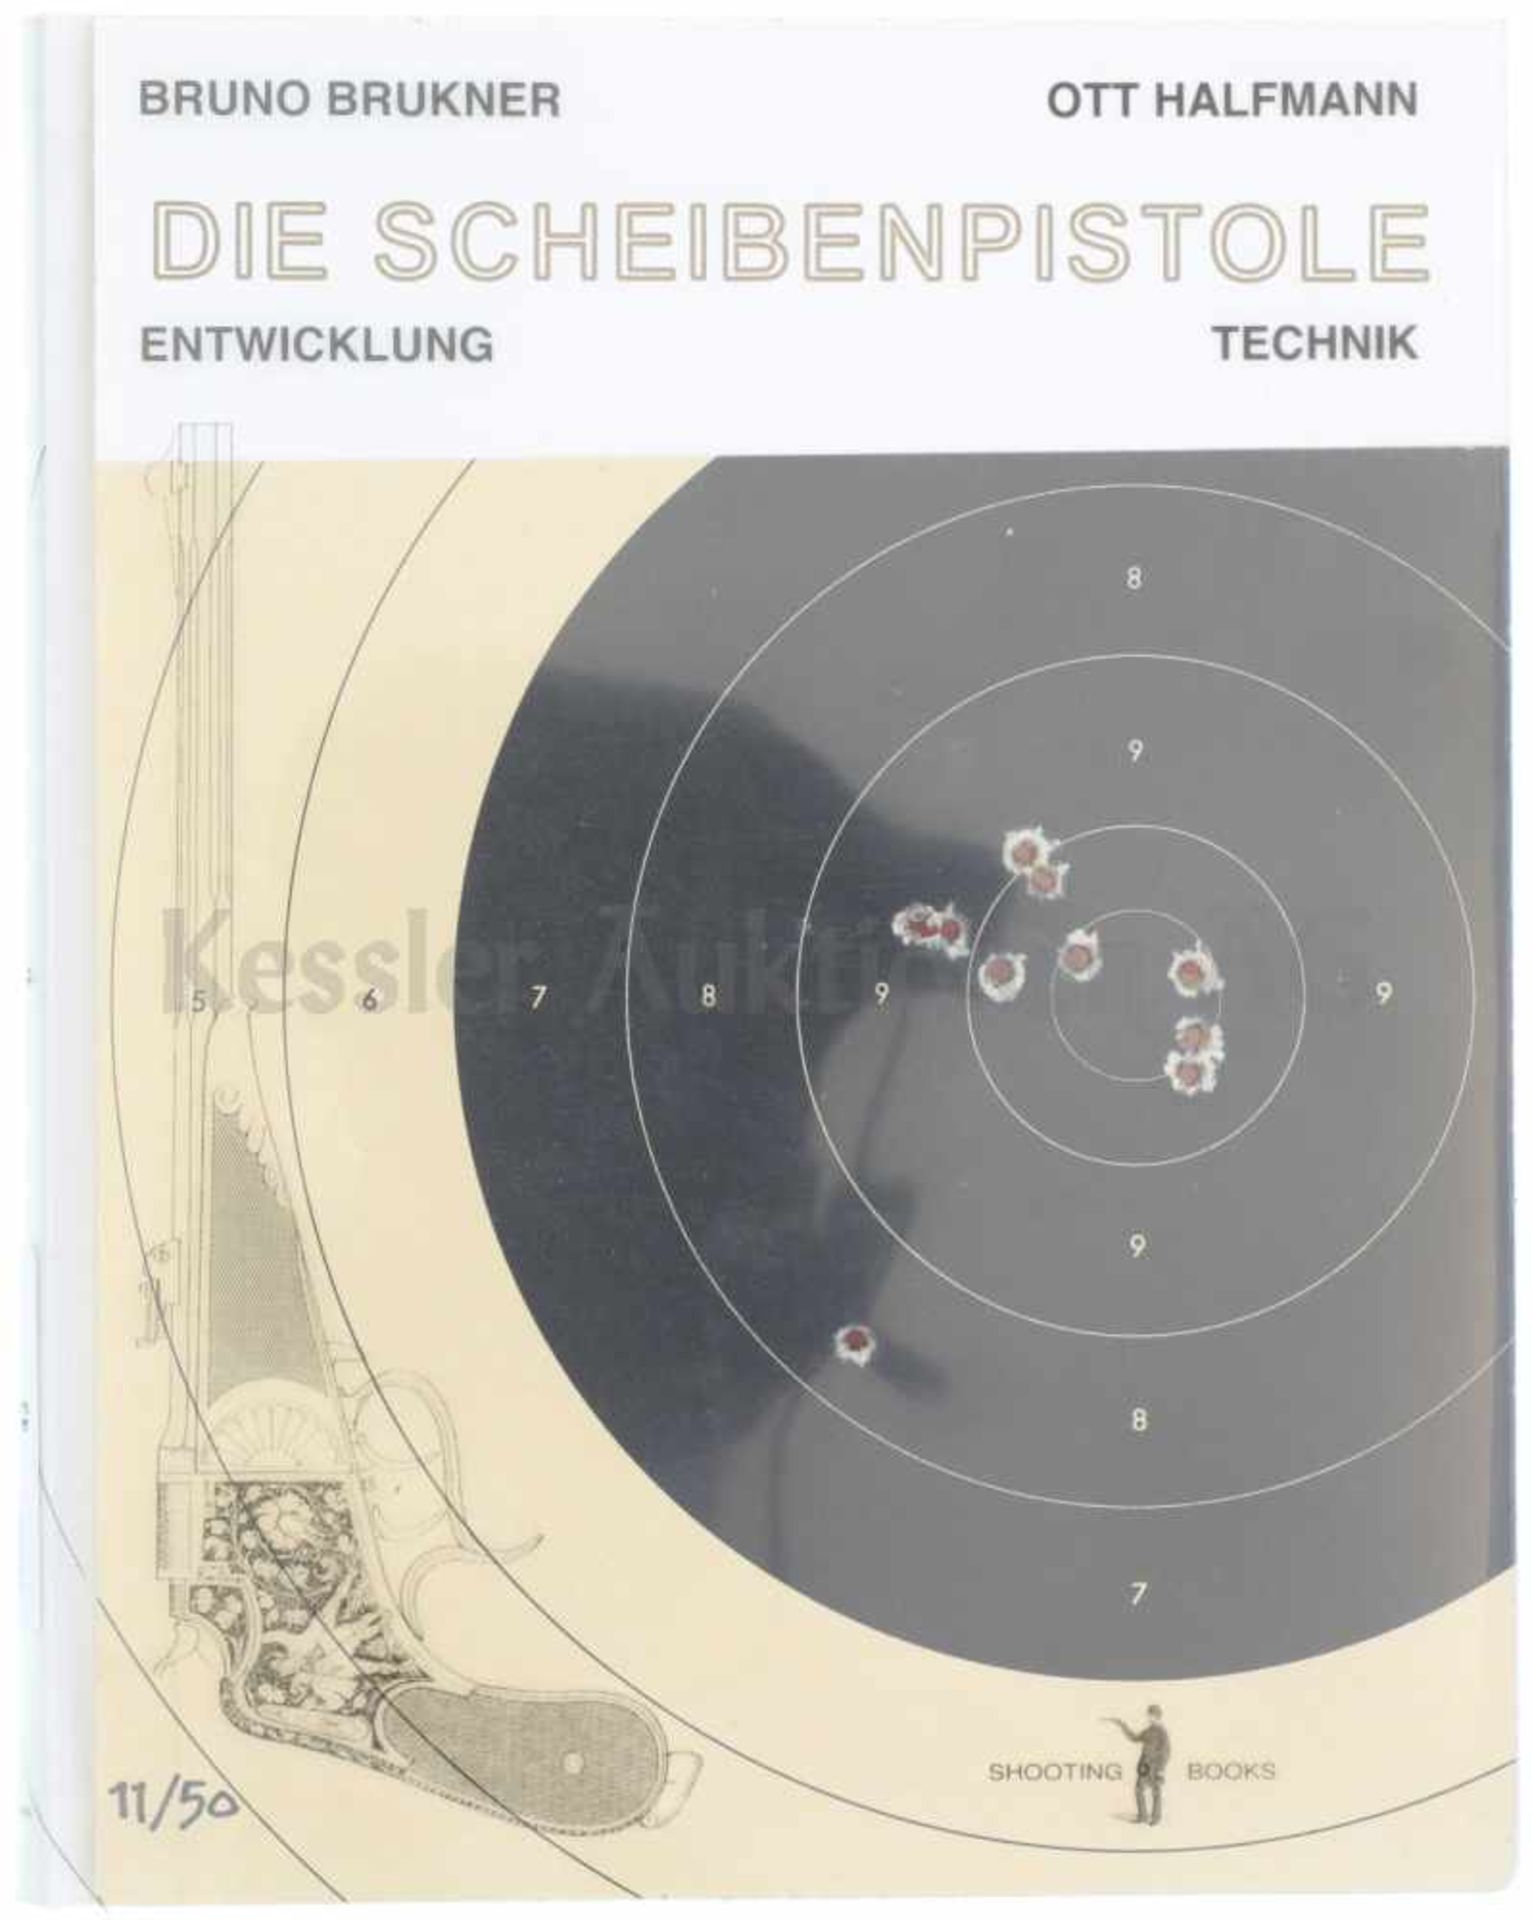 Die Scheibenpistolen, Bruno Brukner Spannendes Buch über die Entwicklung der Scheibenpistolen.